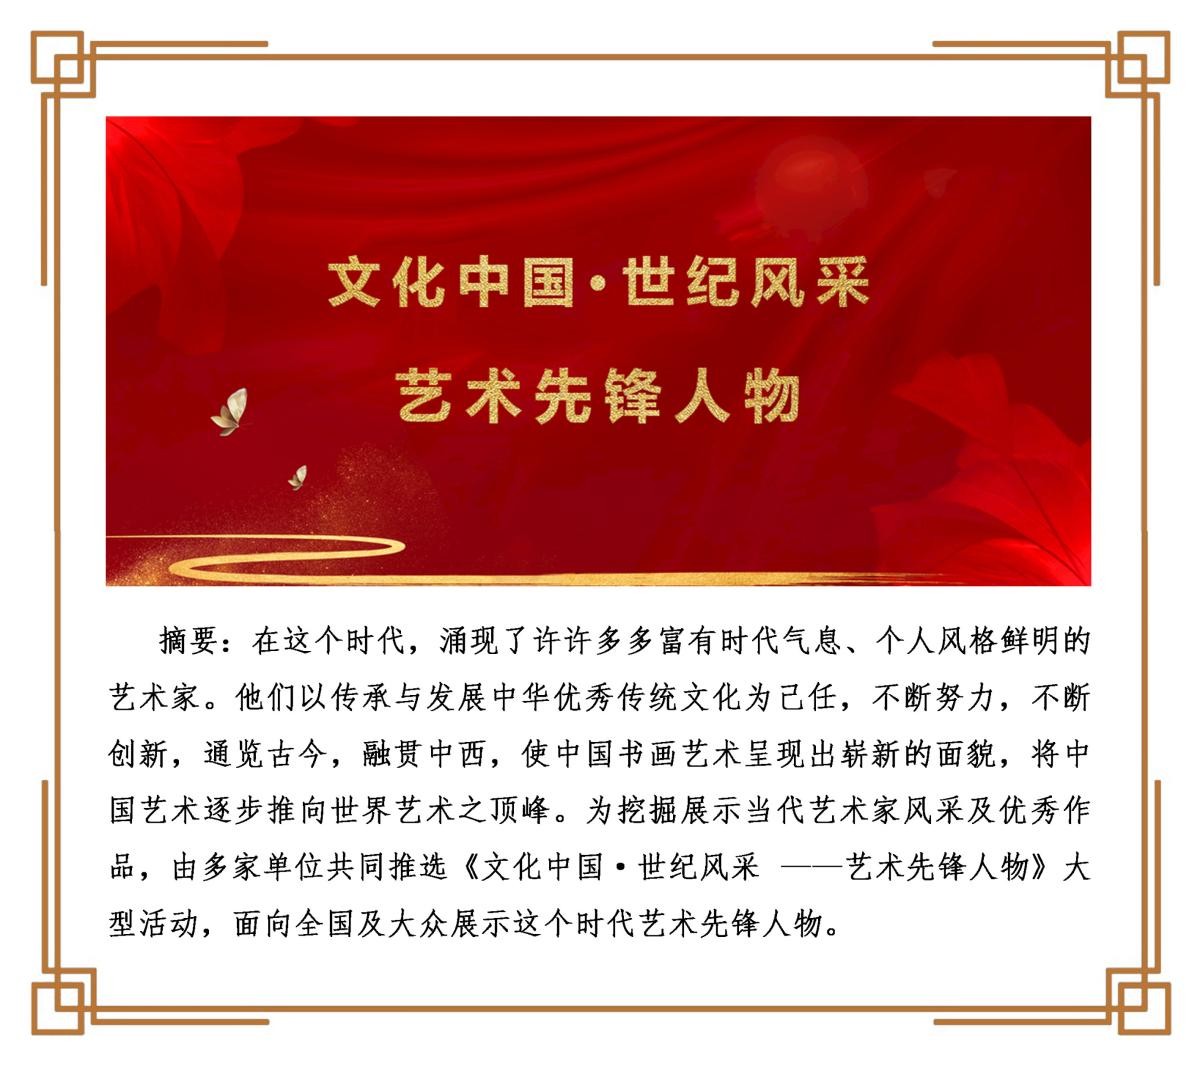 《文化中国·世纪风采》——艺术先锋人物杨文德